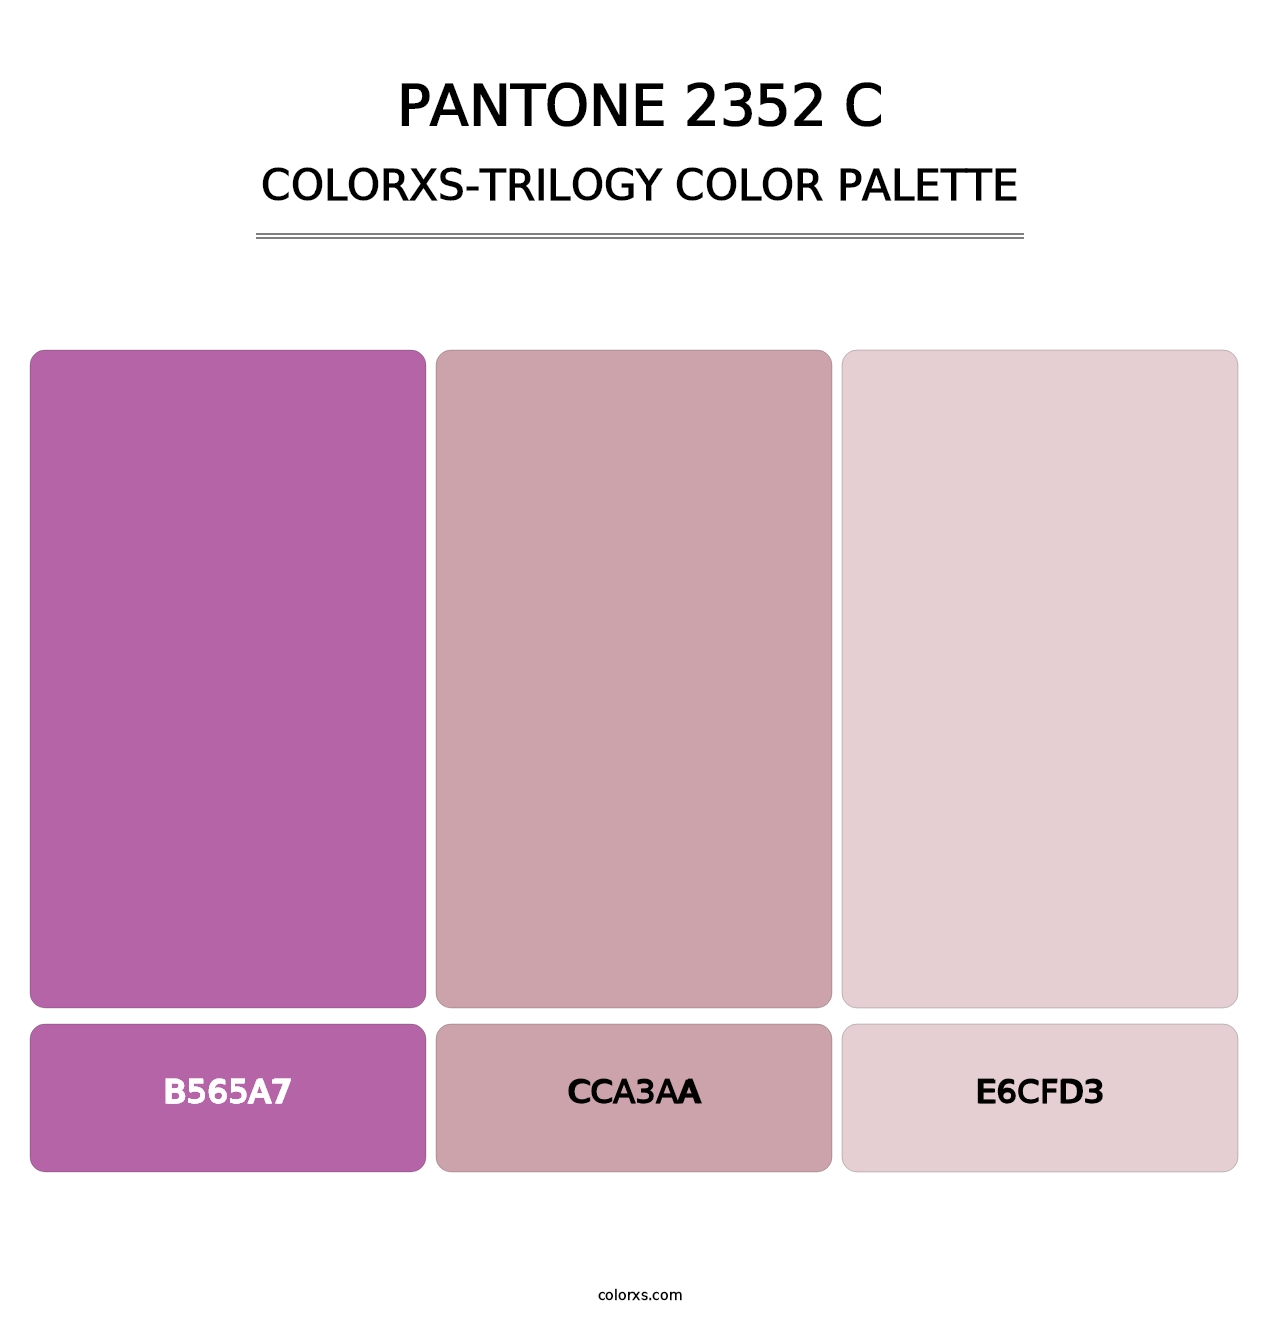 PANTONE 2352 C - Colorxs Trilogy Palette